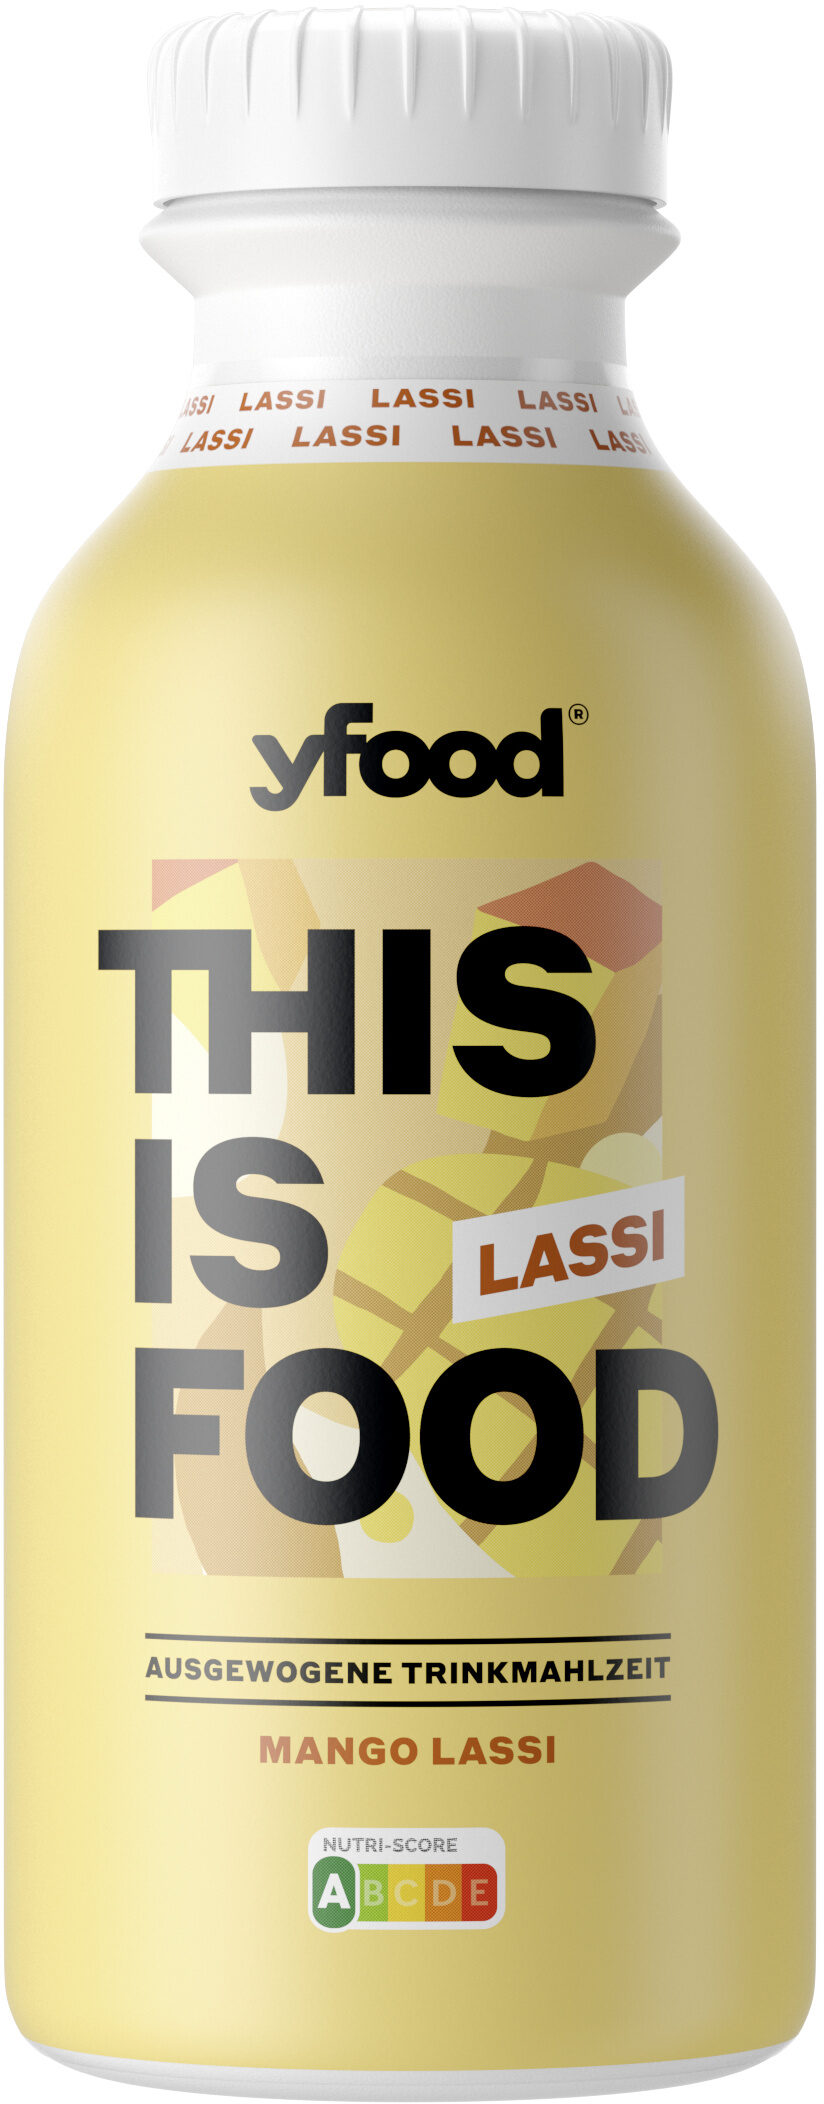 yfood Mango Lassi - Instruction de recyclage et/ou informations d'emballage - de